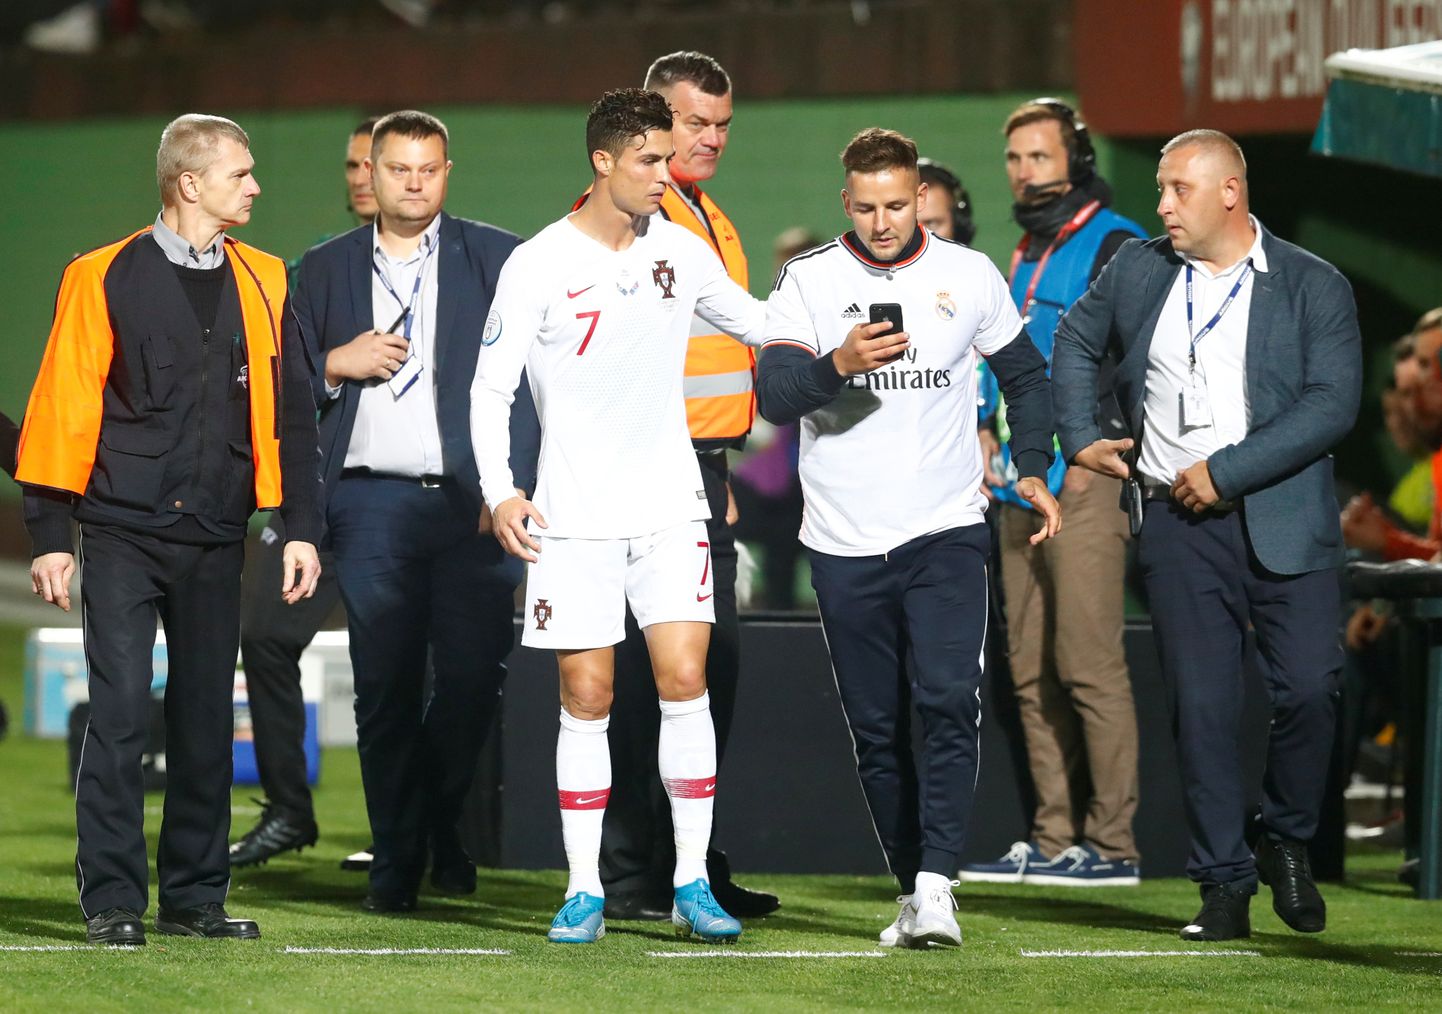 Leedu fänn loodab Cristiano Ronaldoga koos pilti teha ja on telefoni juba valmis pannud.